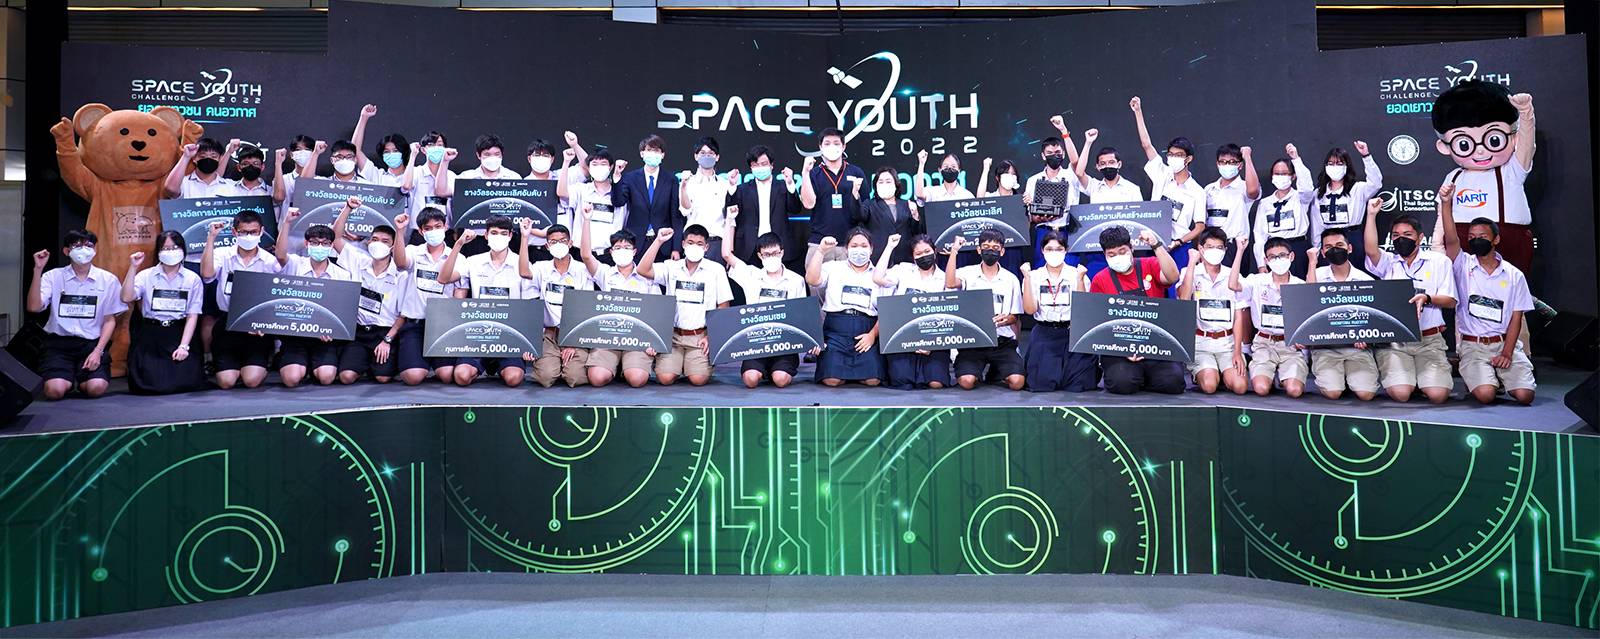 เชียงใหม่ - ทีมเอ็มวีพีเจเอ อีโวทู จากโรงเรียนมงฟอร์ตวิทยาลัย  คว้ารางวัลชนะเลิศ และรางวัลความคิดสร้างสรรค์ดีเด่น  Space Youth Challenge 2022